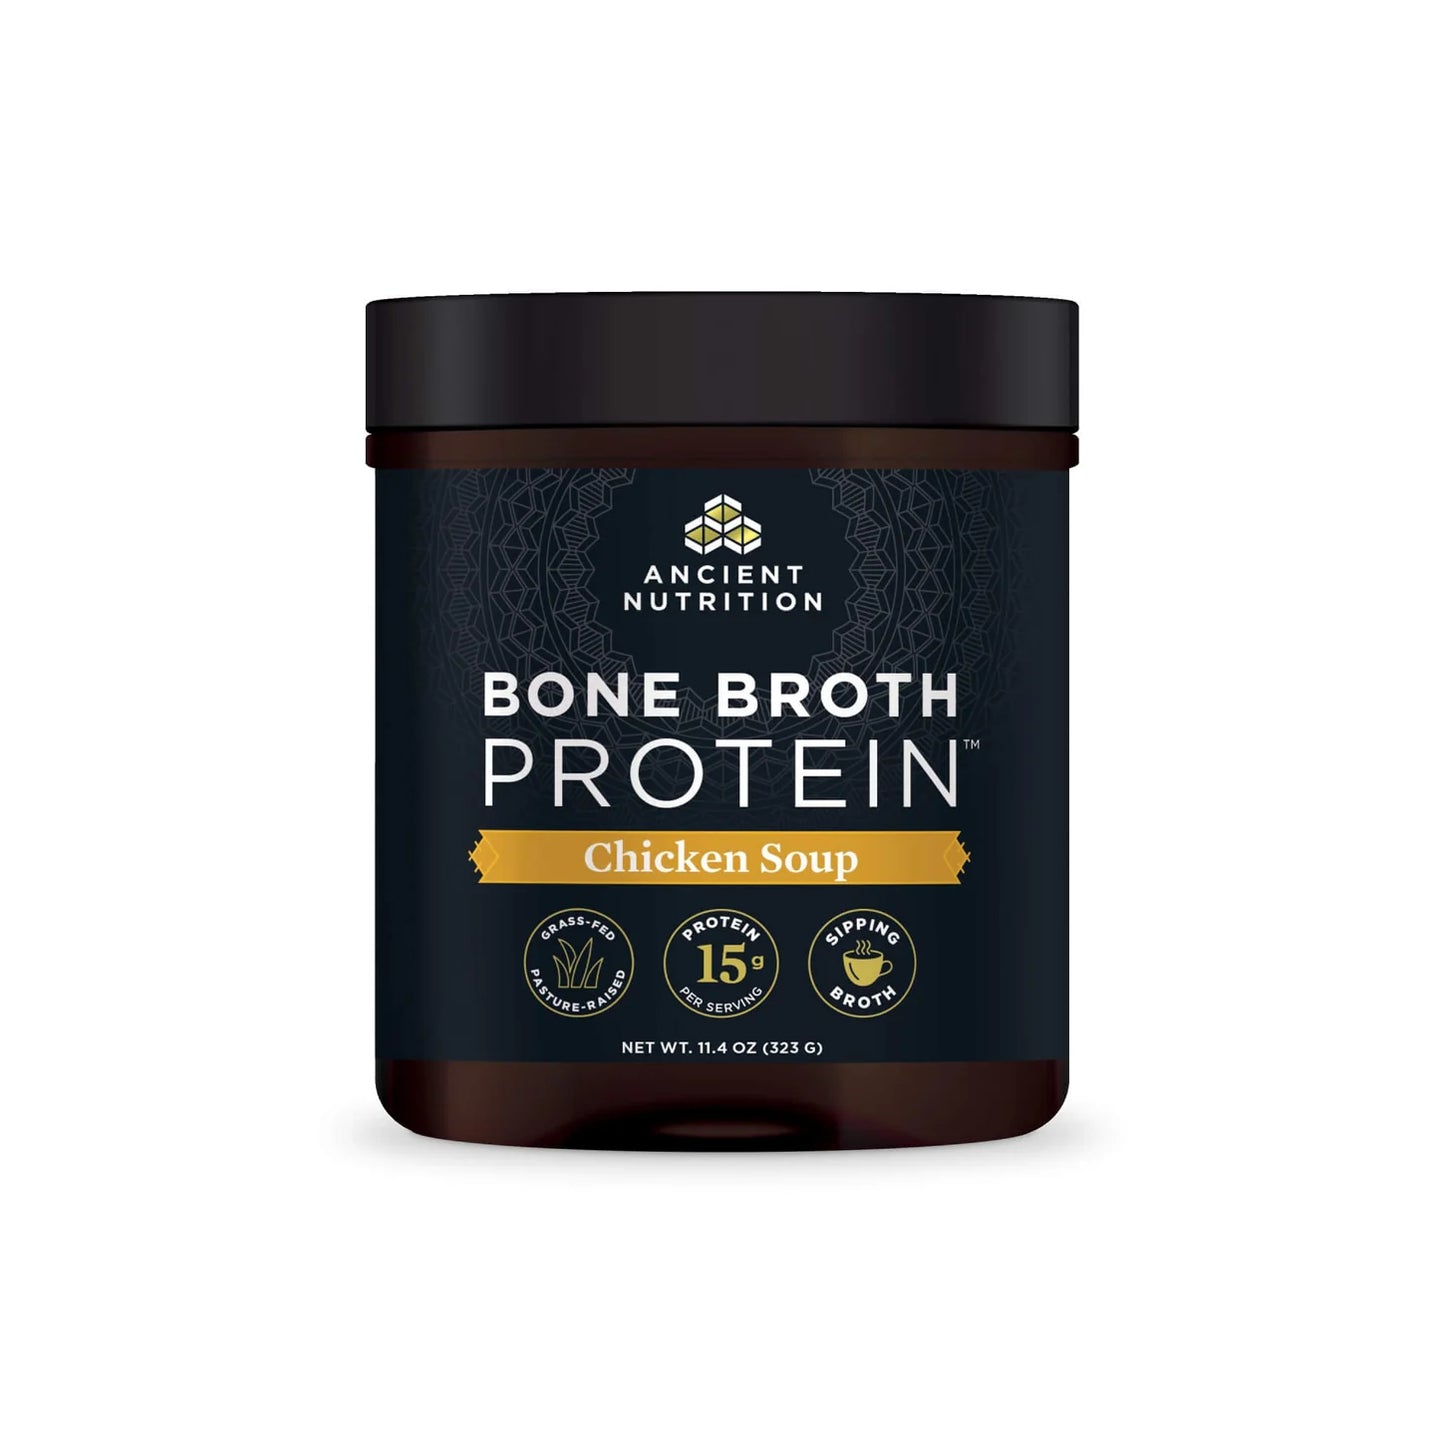 Bone Broth Protein Chicken Soup